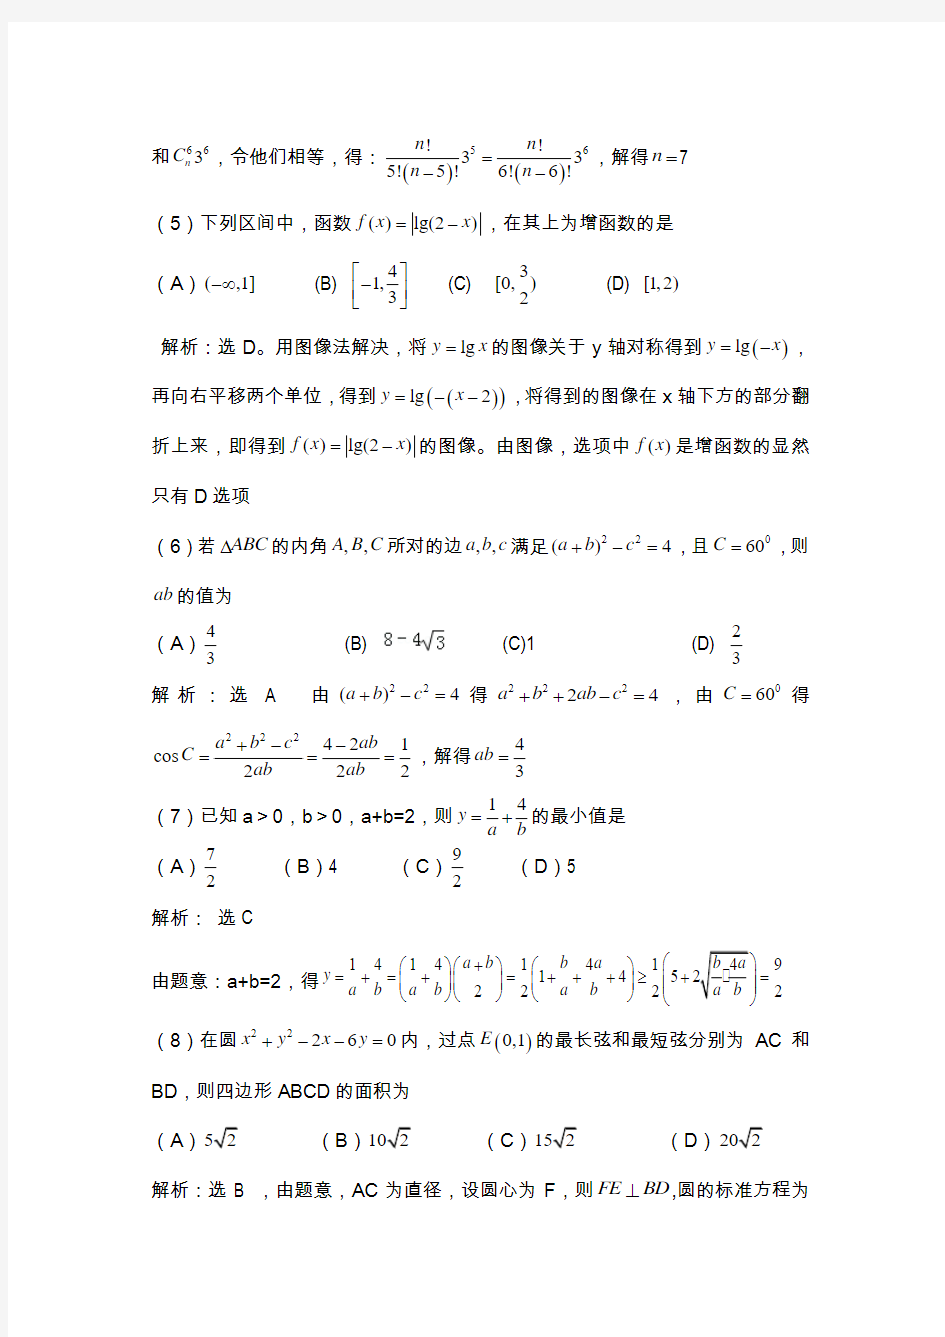 2011年重庆高考理科数学试卷及答案详解_WORD版(答案超级详细)